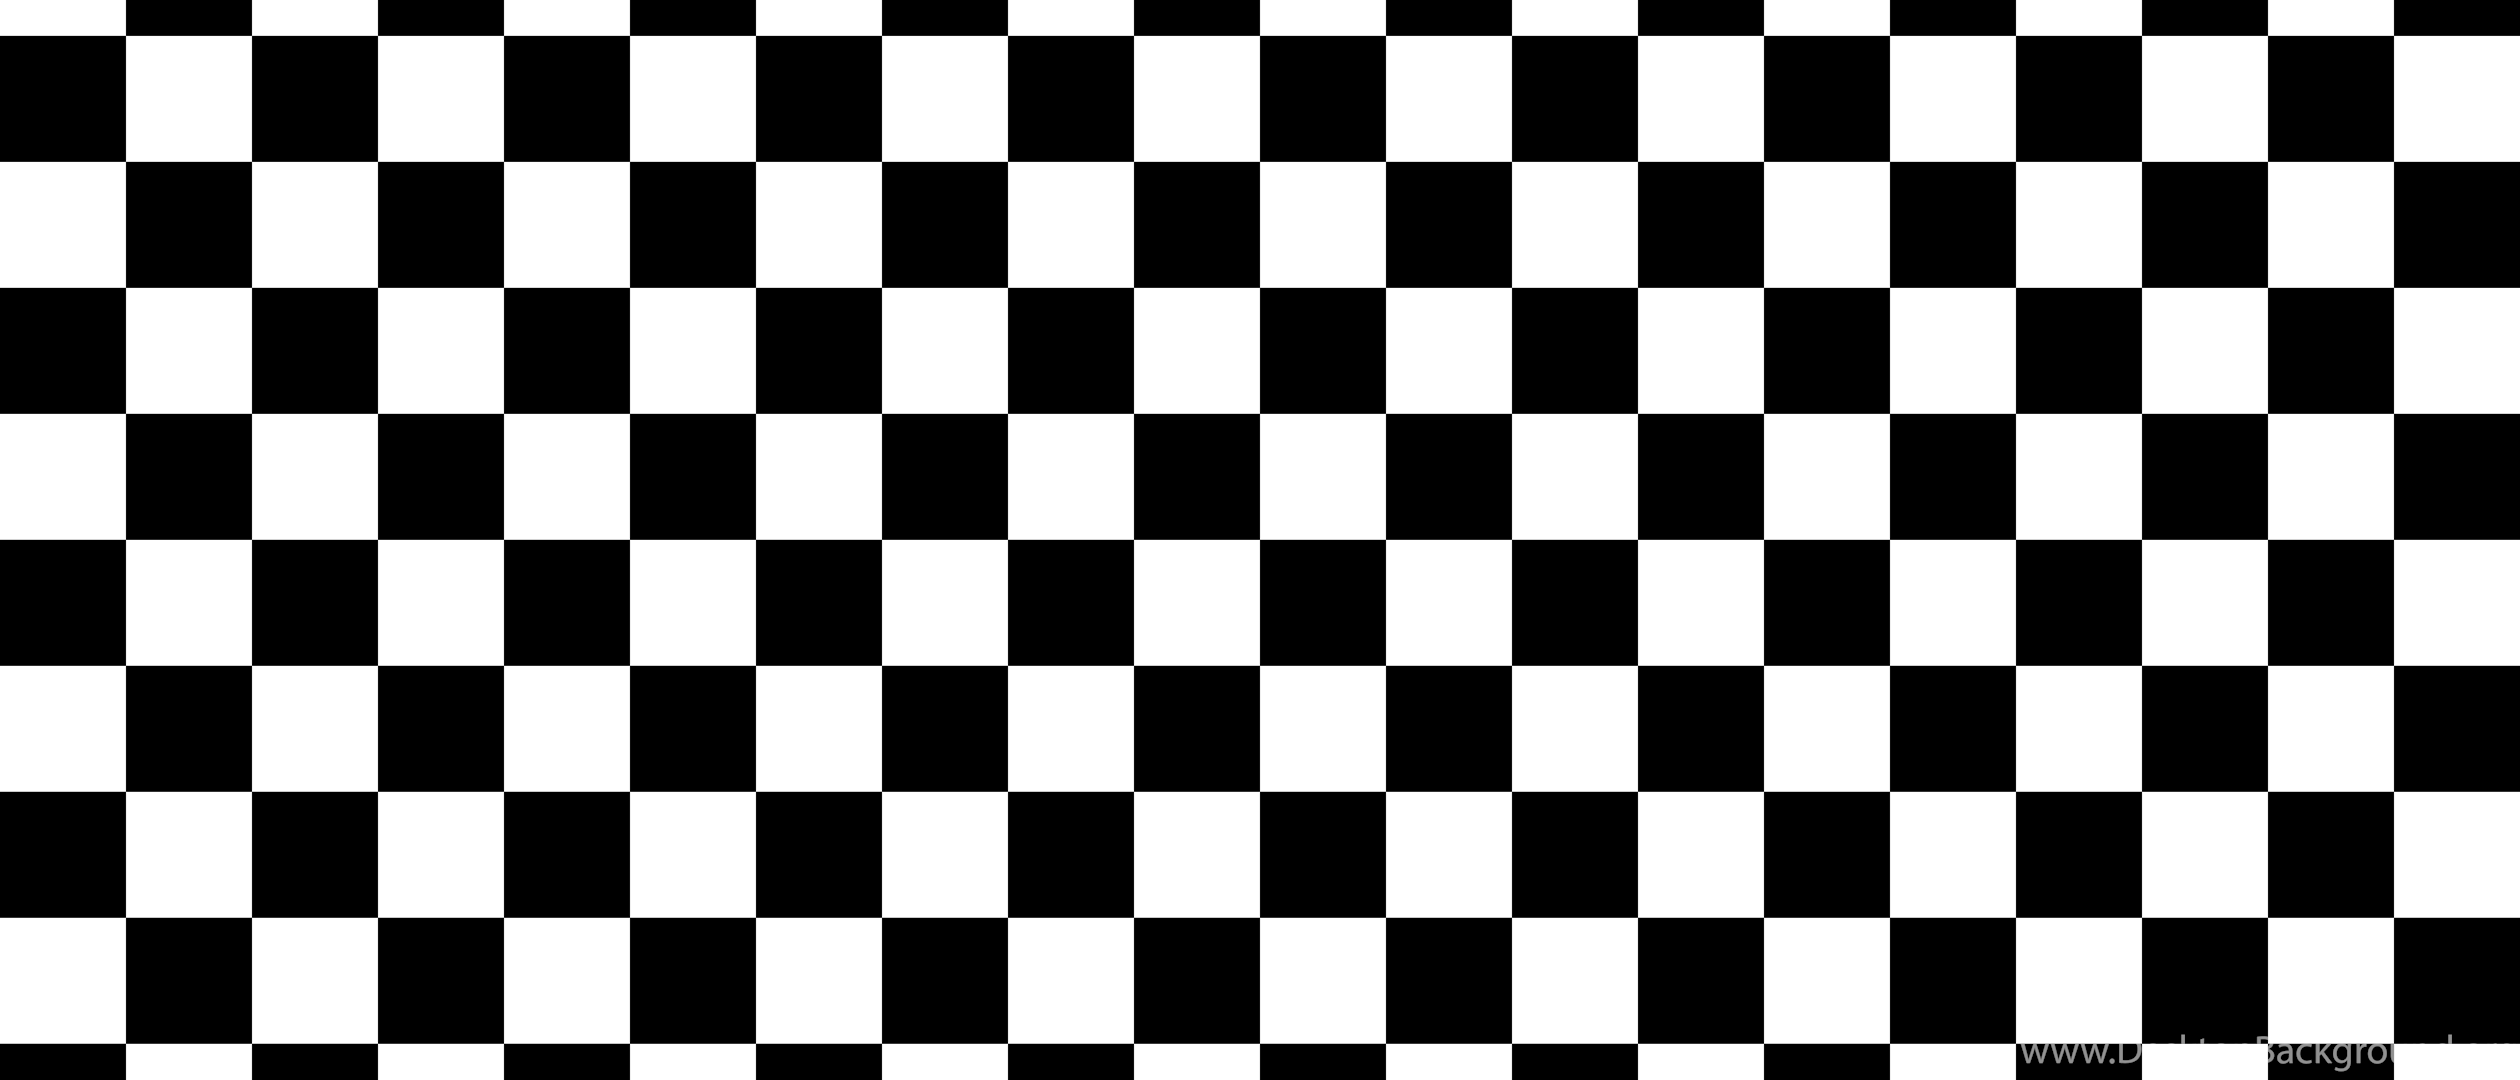 Шахматная клетка. Черно белые квадратики. Принт в клетку черно белый. Шахматная доска чёрно белая.